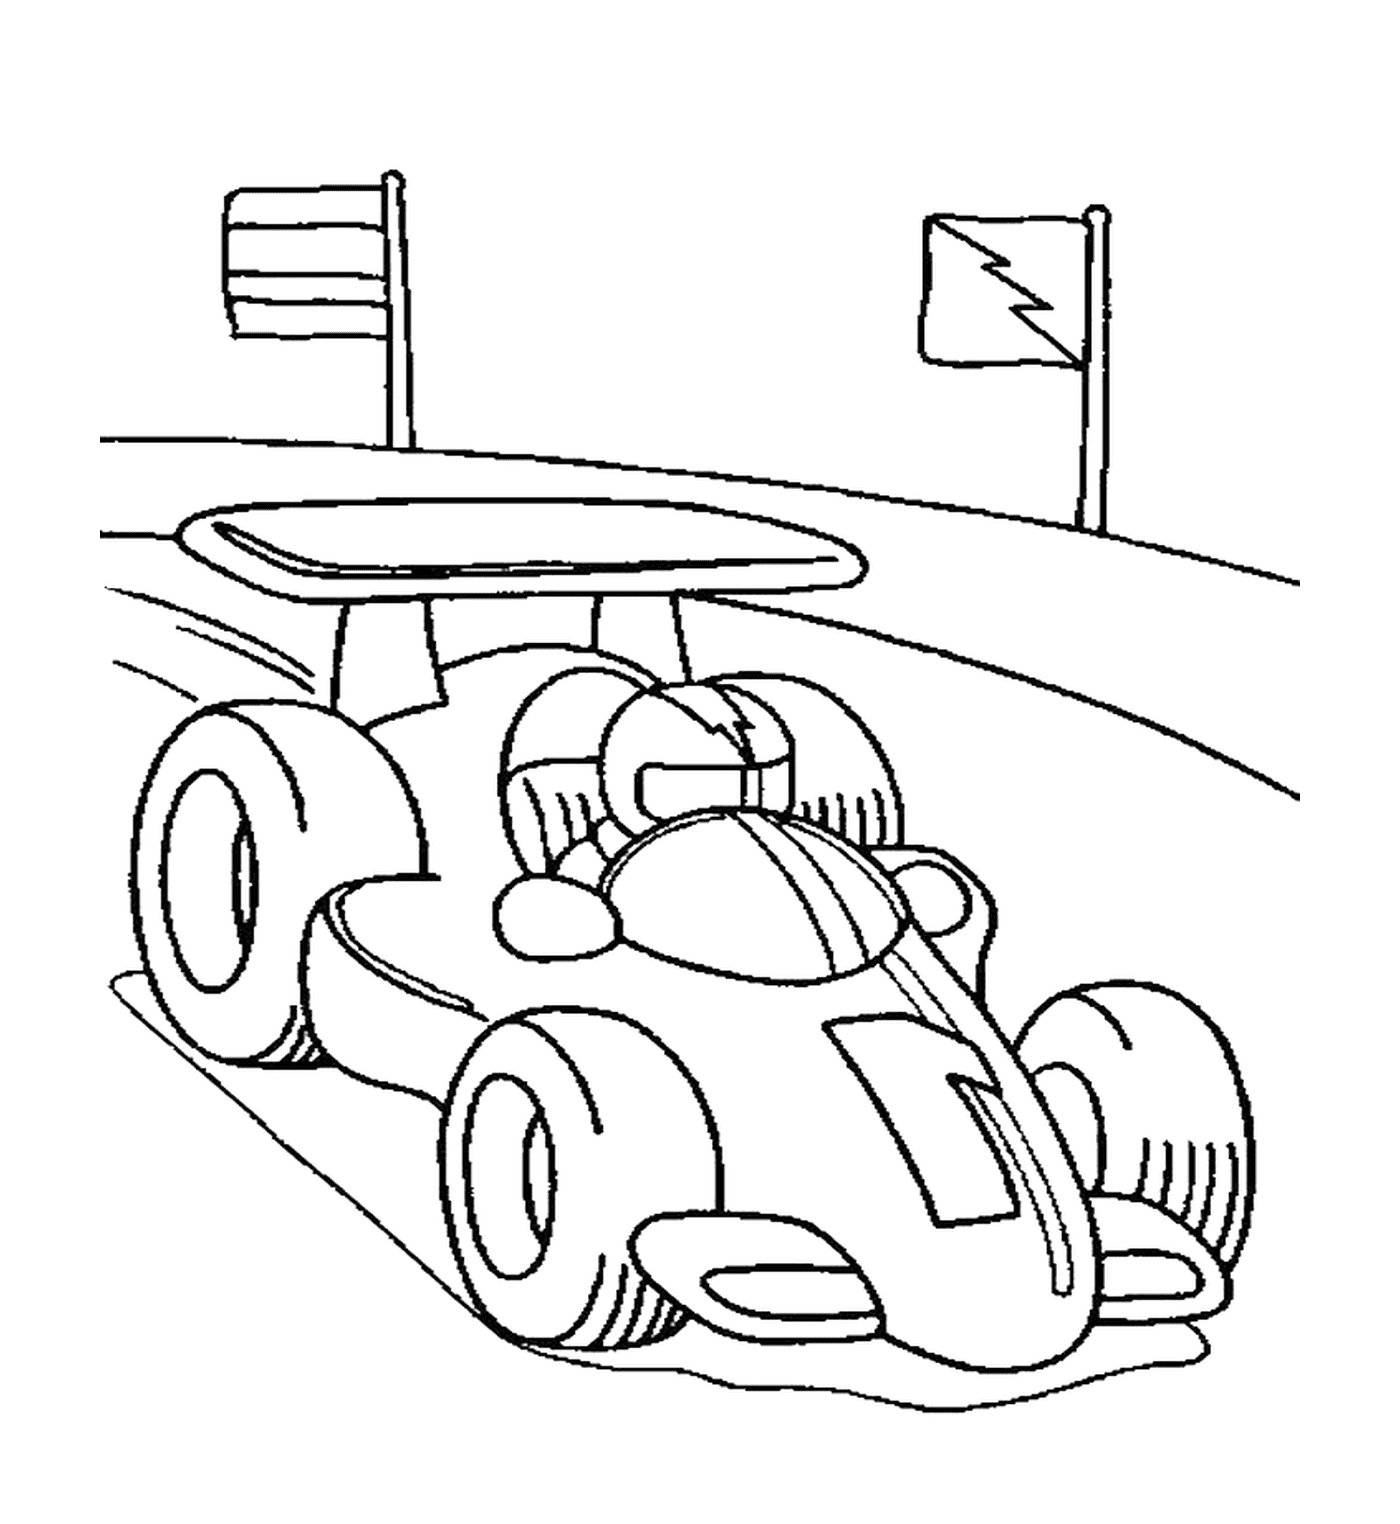  Формула 1 - водитель автомобиля 